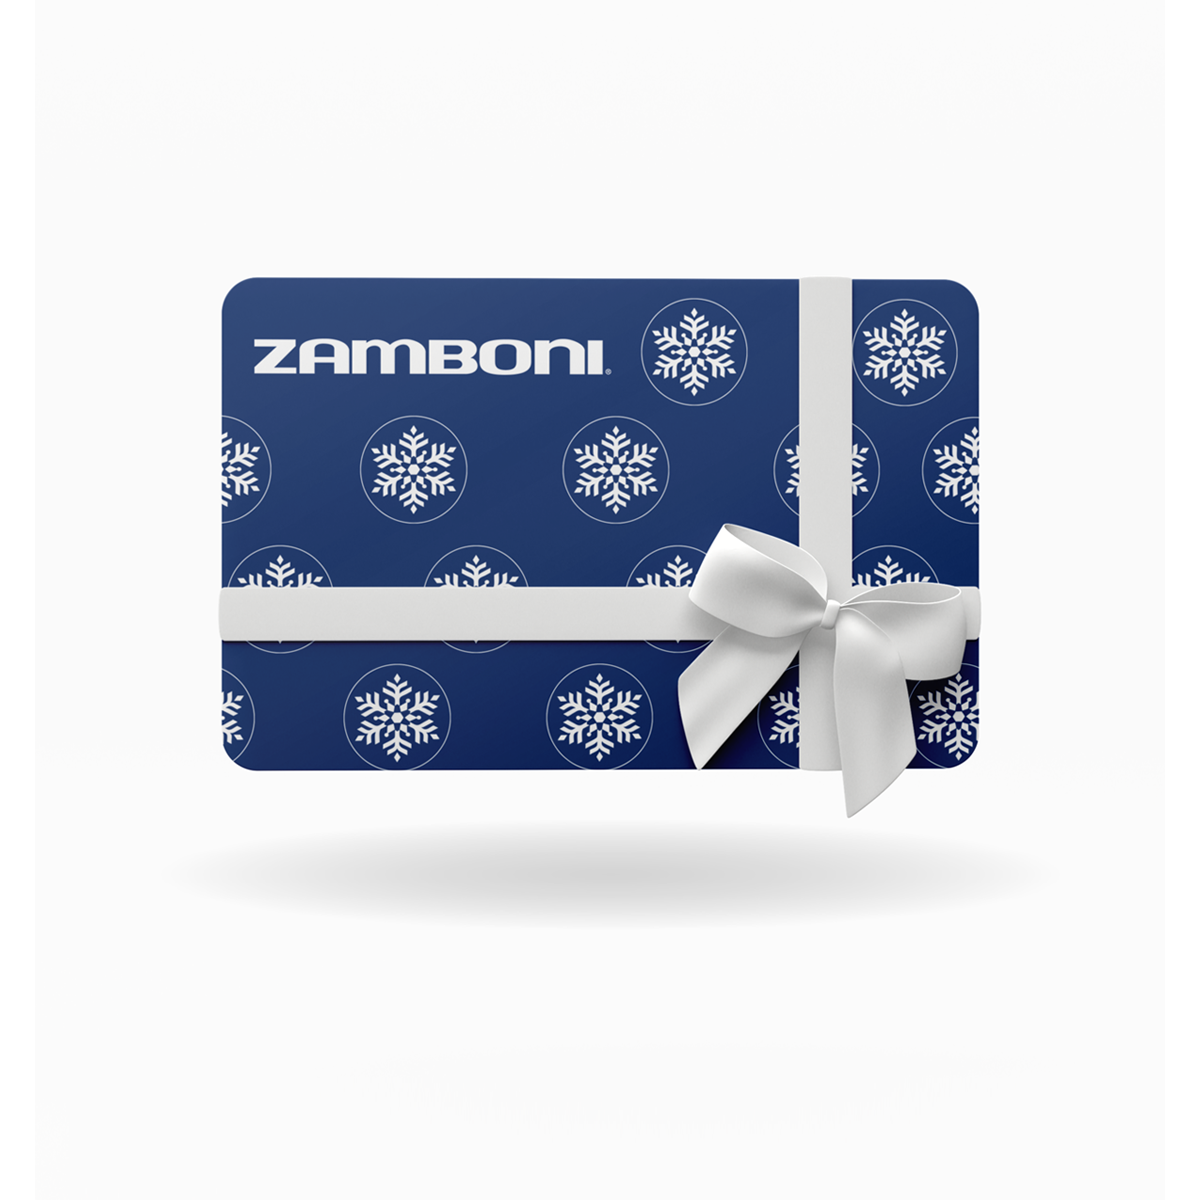 Zamboni E-Gift Card